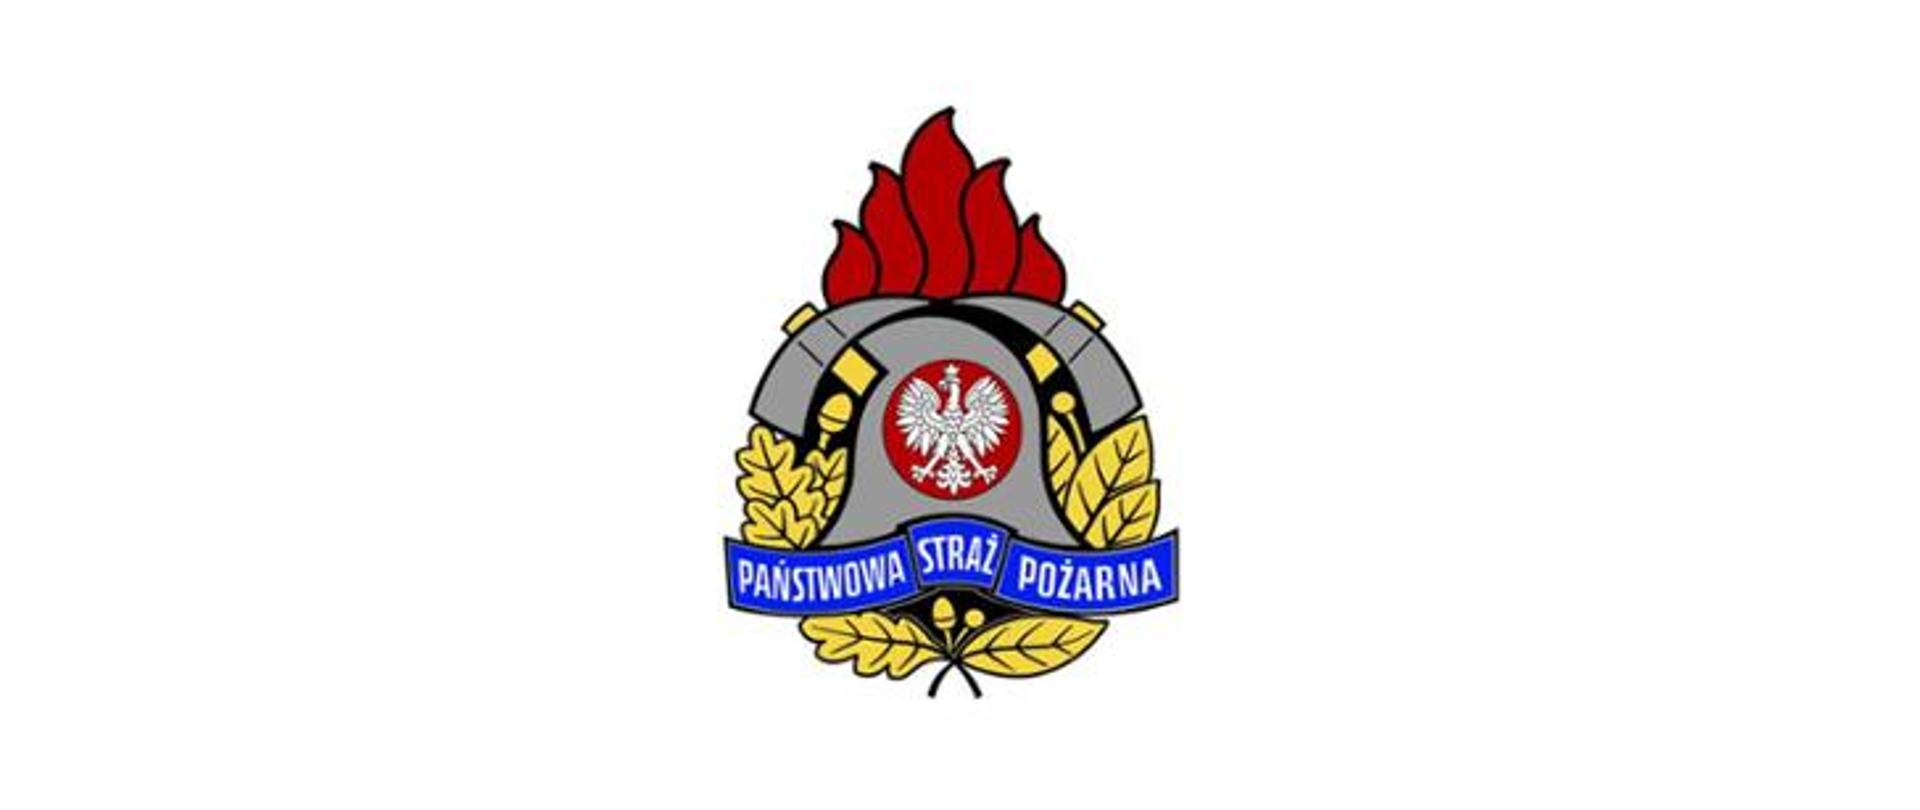 Zdjęcie przedstawia logo Państwowej Straży Pożarnej.